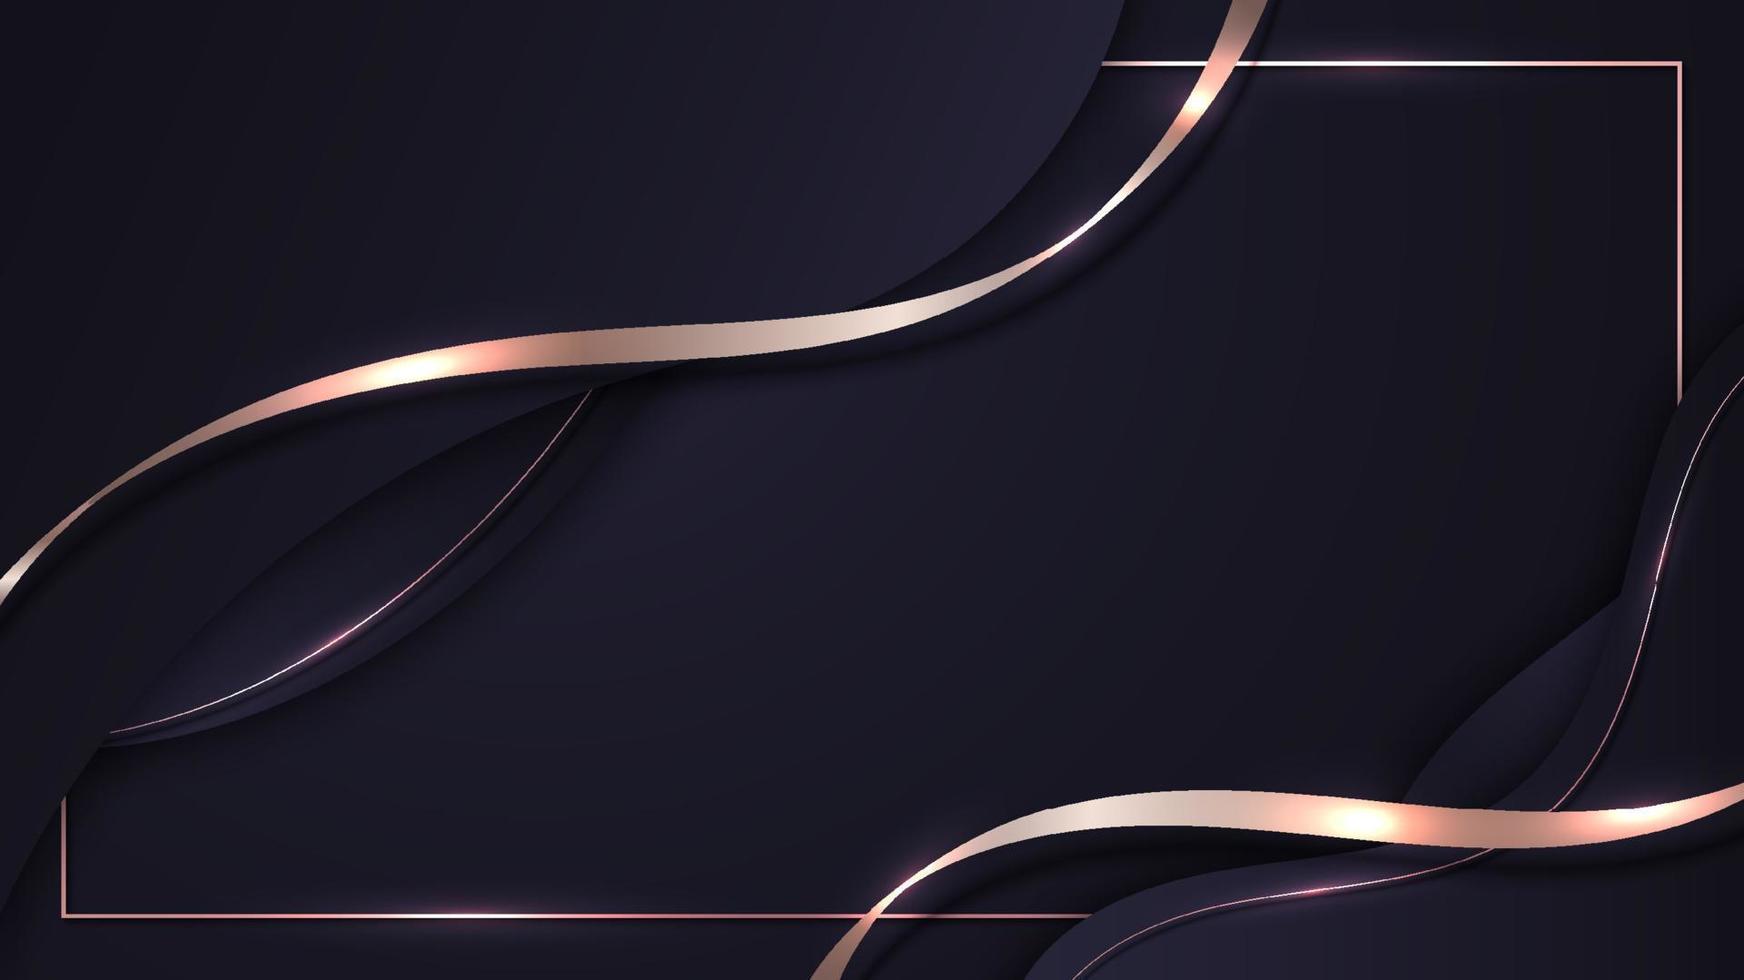 lignes de vague de couleur pourpre de luxe 3d abstraites avec décoration de ligne courbe en or rose brillant et éclairage de paillettes de cadre sur fond sombre dégradé vecteur